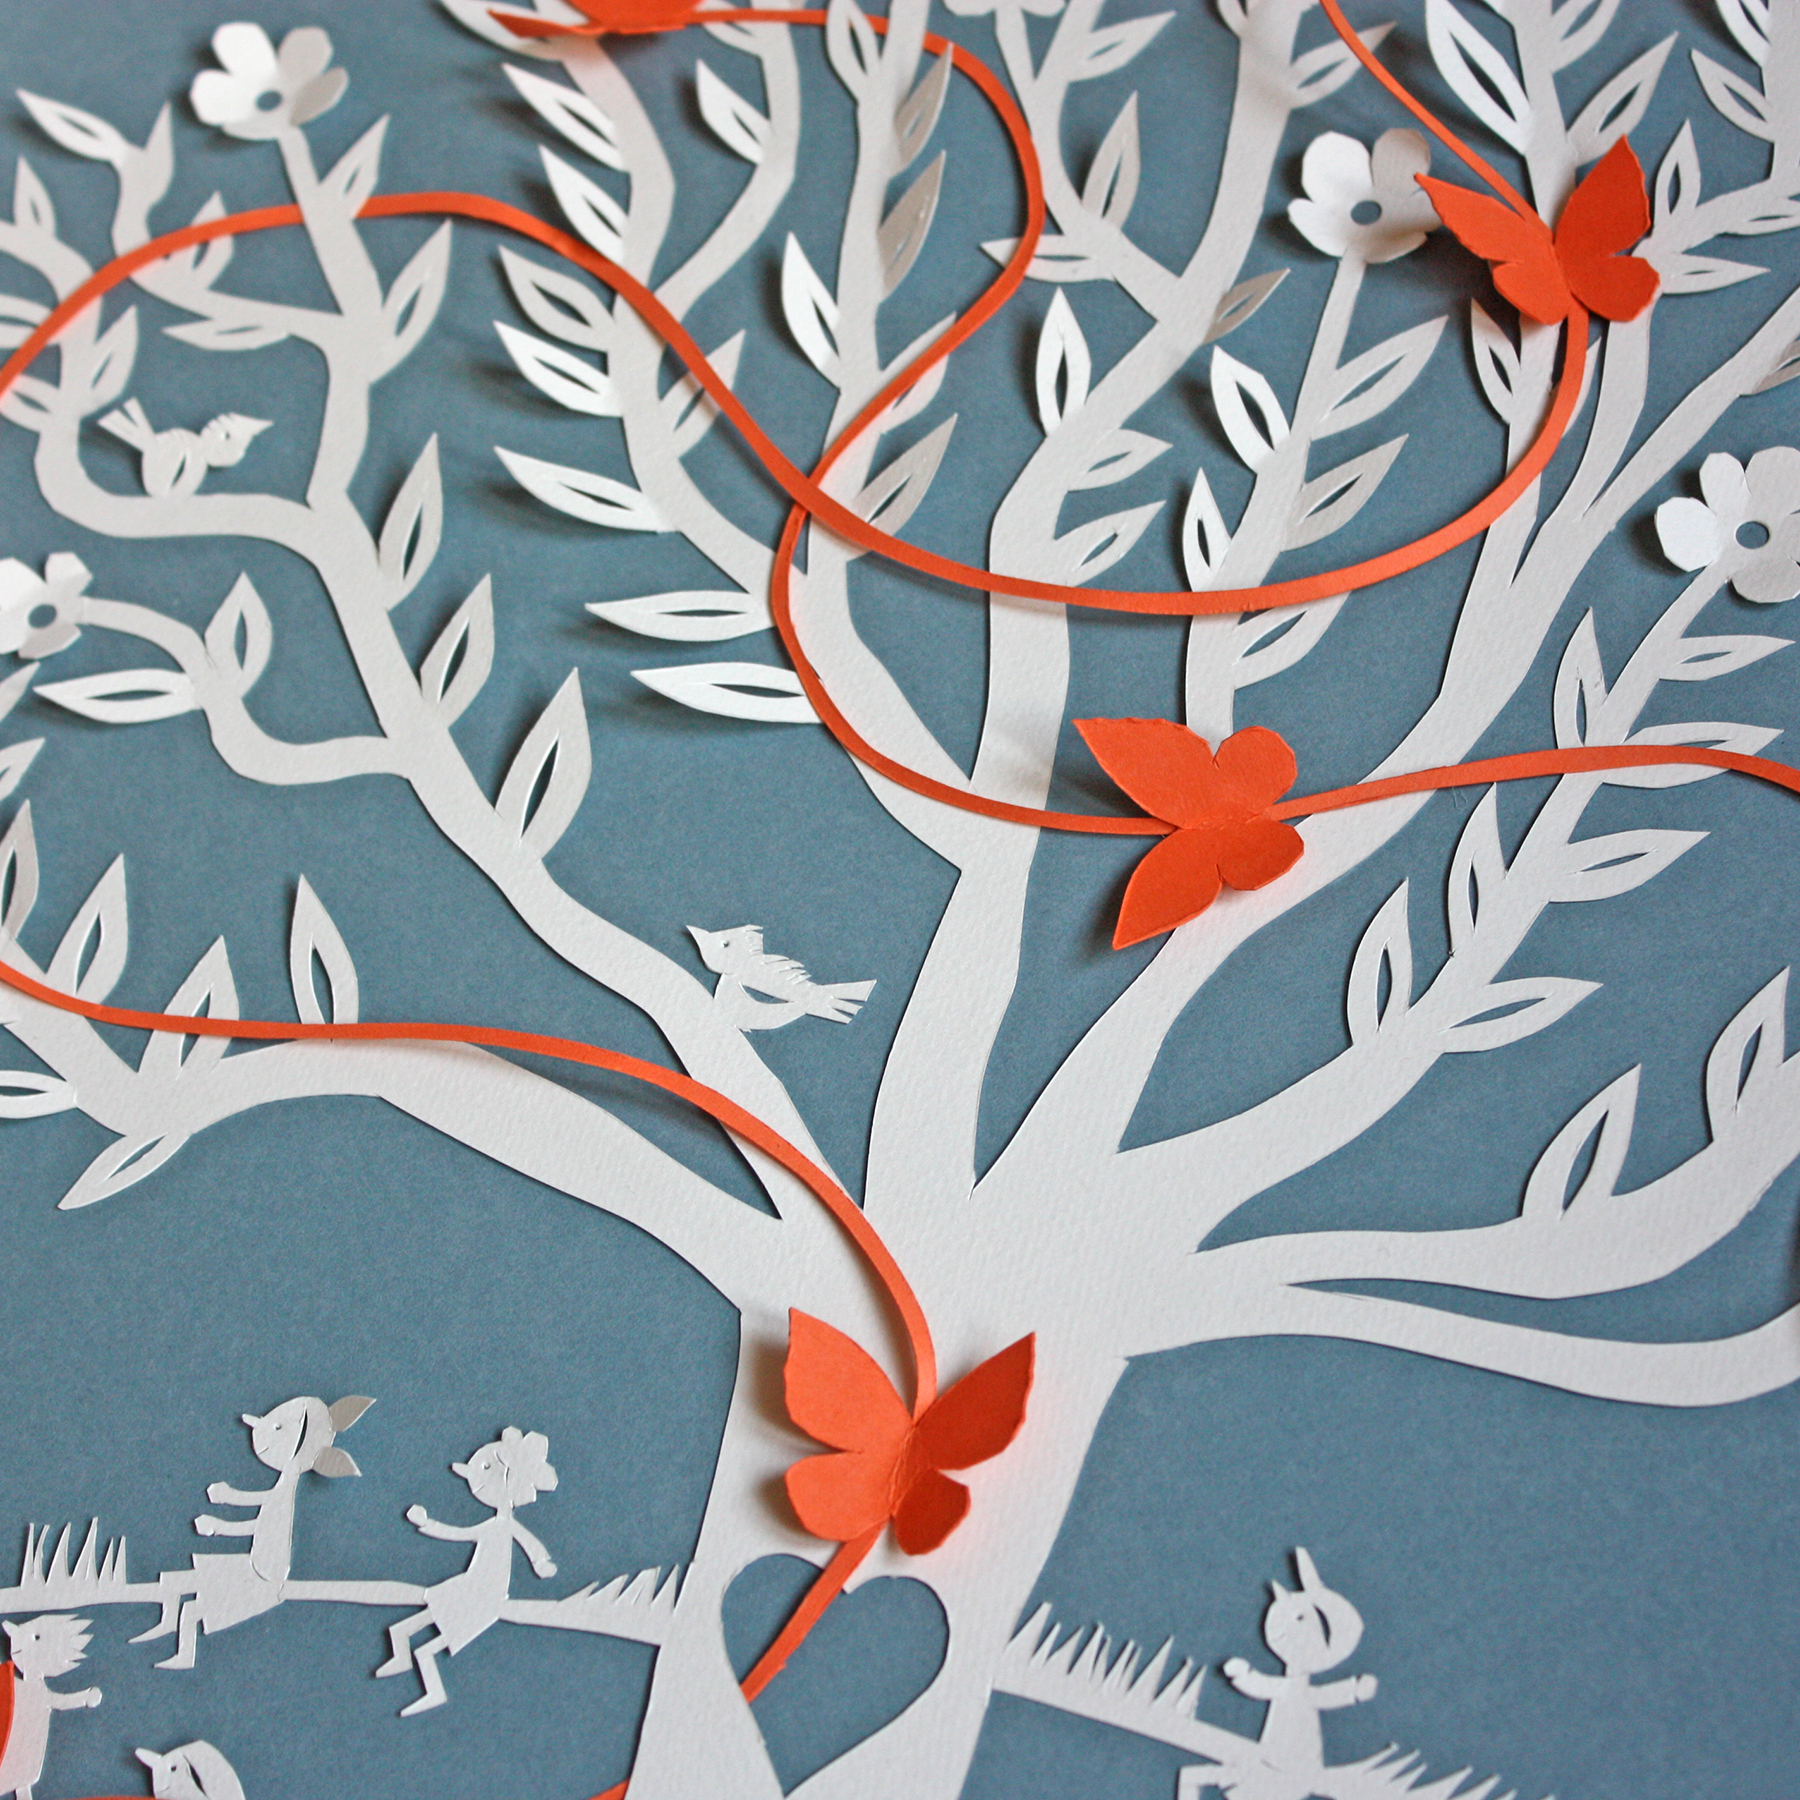 Pormenor de Quadro com Ilustração em papercut de árvore com crianças e borboleta